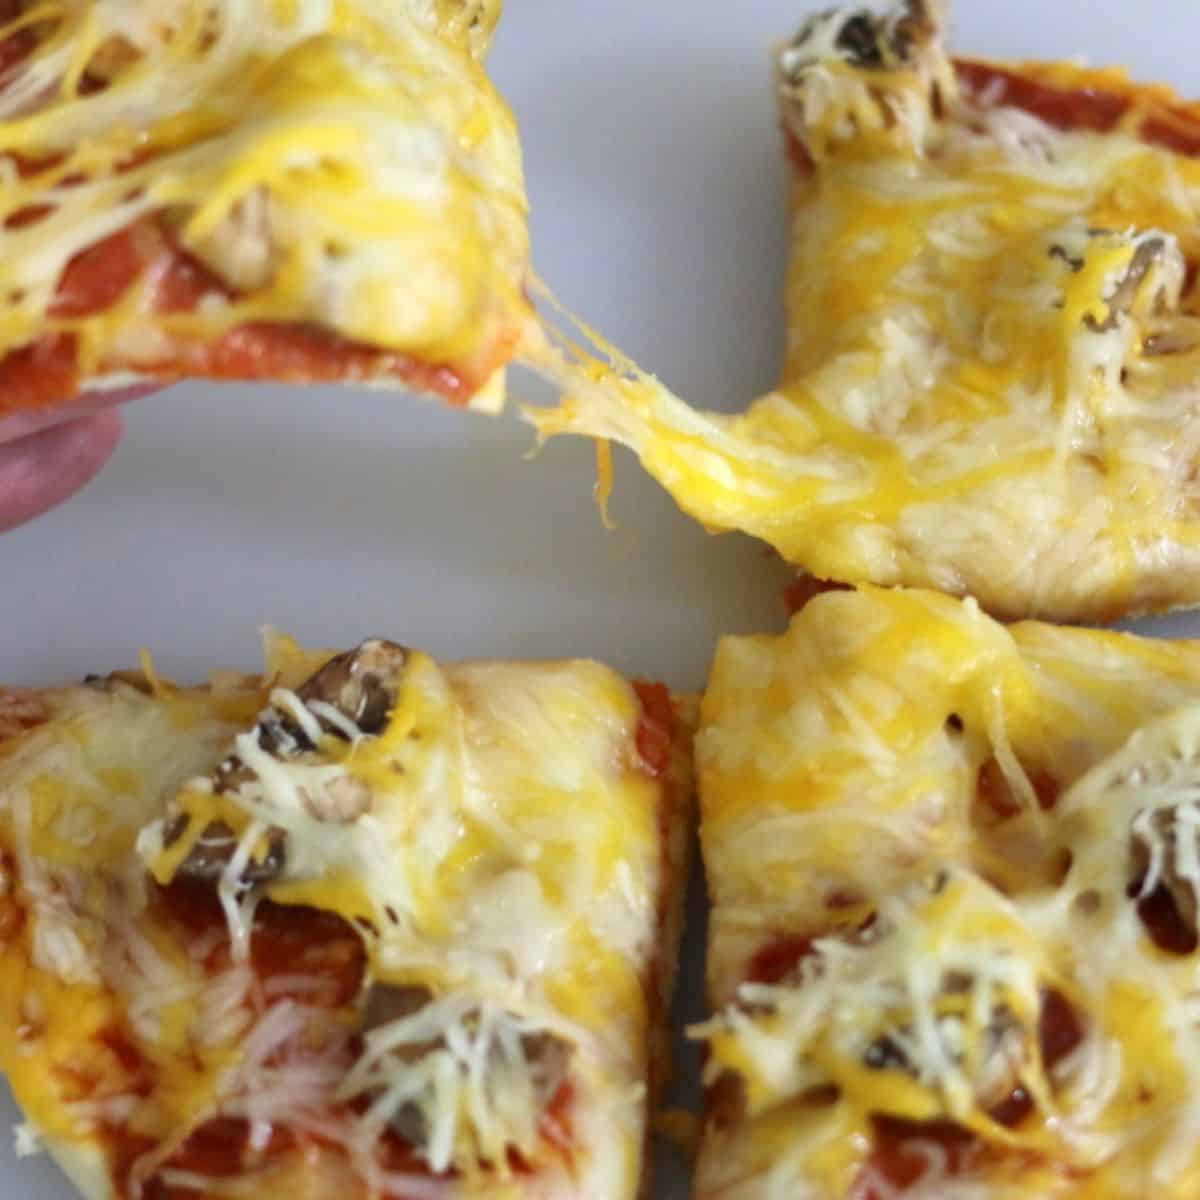 Easy Pita Bread Pizza Recipe 